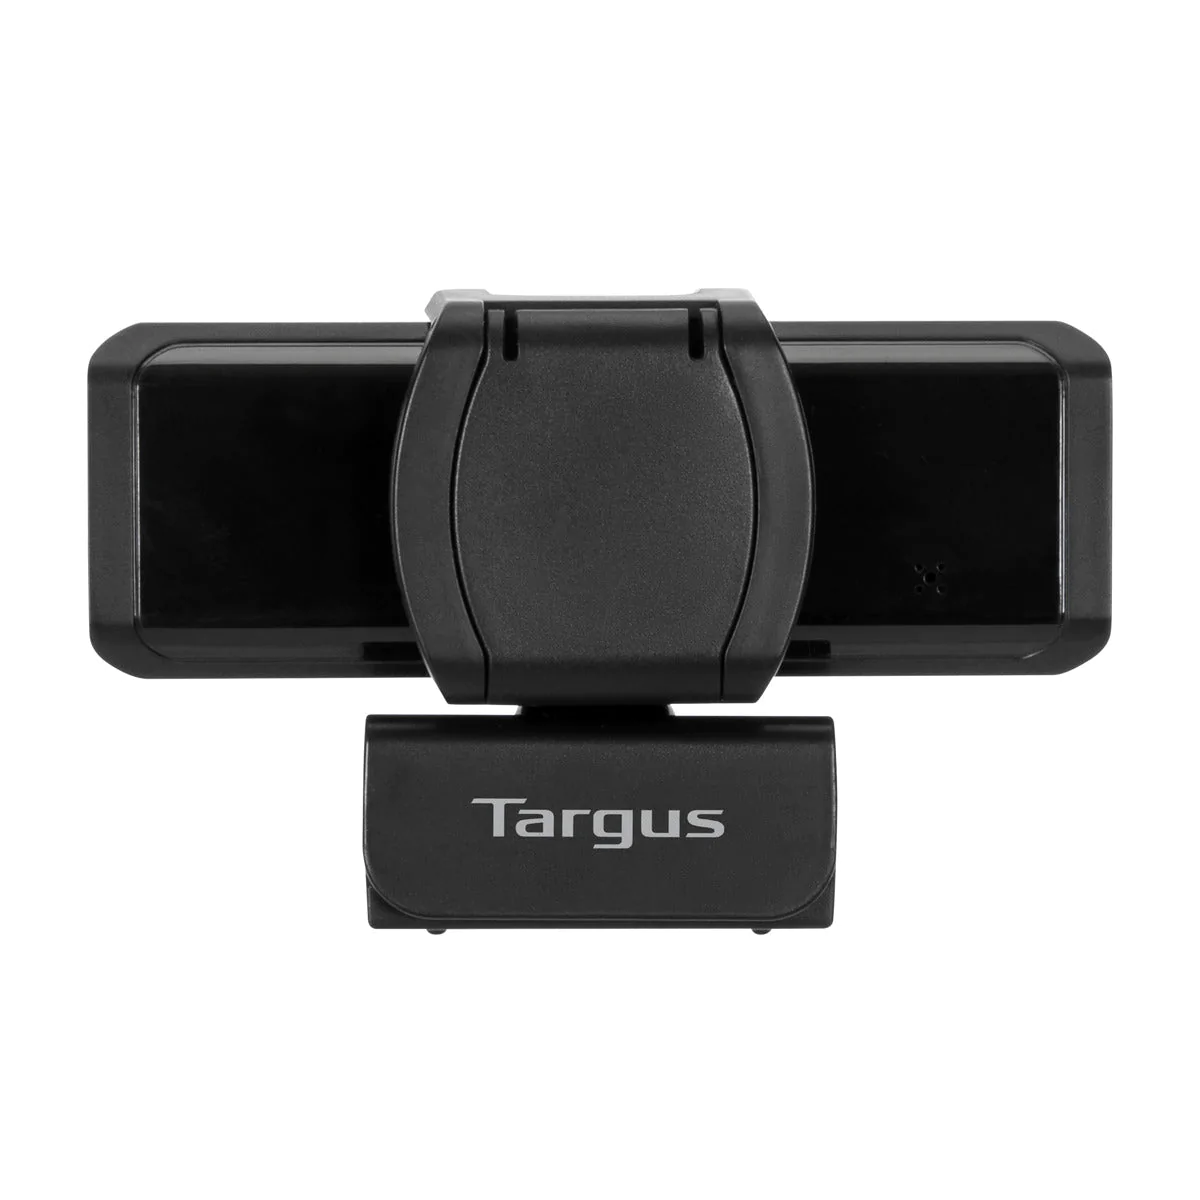 targus-webcams-targus-webcam-pro-full-hd-1080p-webcam-with-flip-privacy-cover-avc041gl-32802583150790.jpg